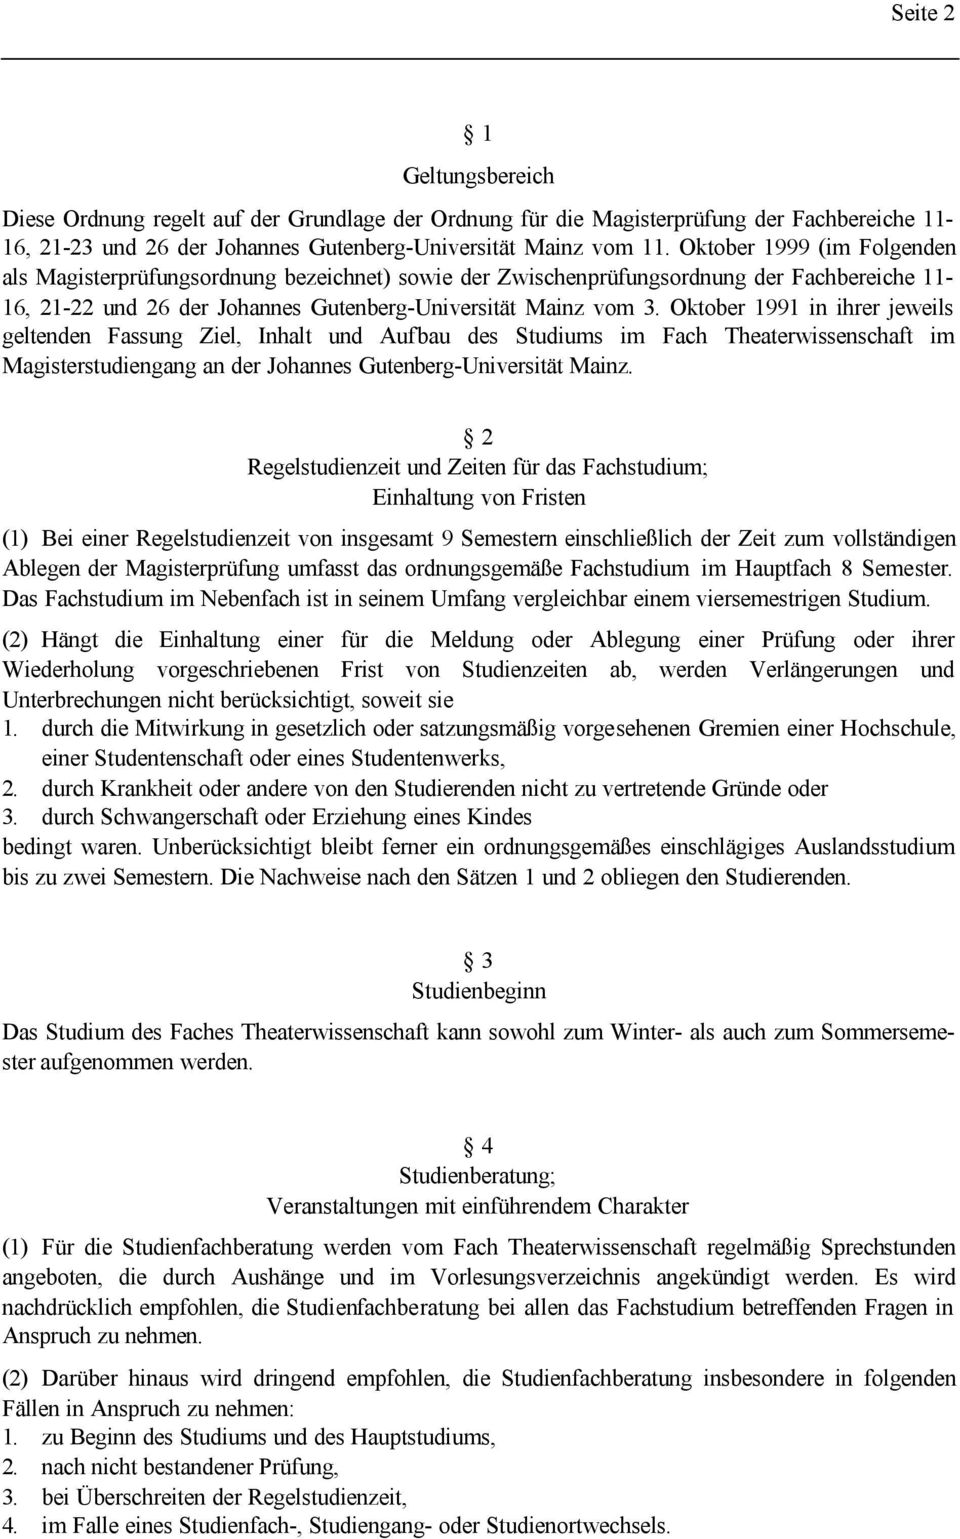 Oktober 1991 in ihrer jeweils geltenden Fassung Ziel, Inhalt und Aufbau des Studiums im Fach Theaterwissenschaft im Magisterstudiengang an der Johannes Gutenberg-Universität Mainz.